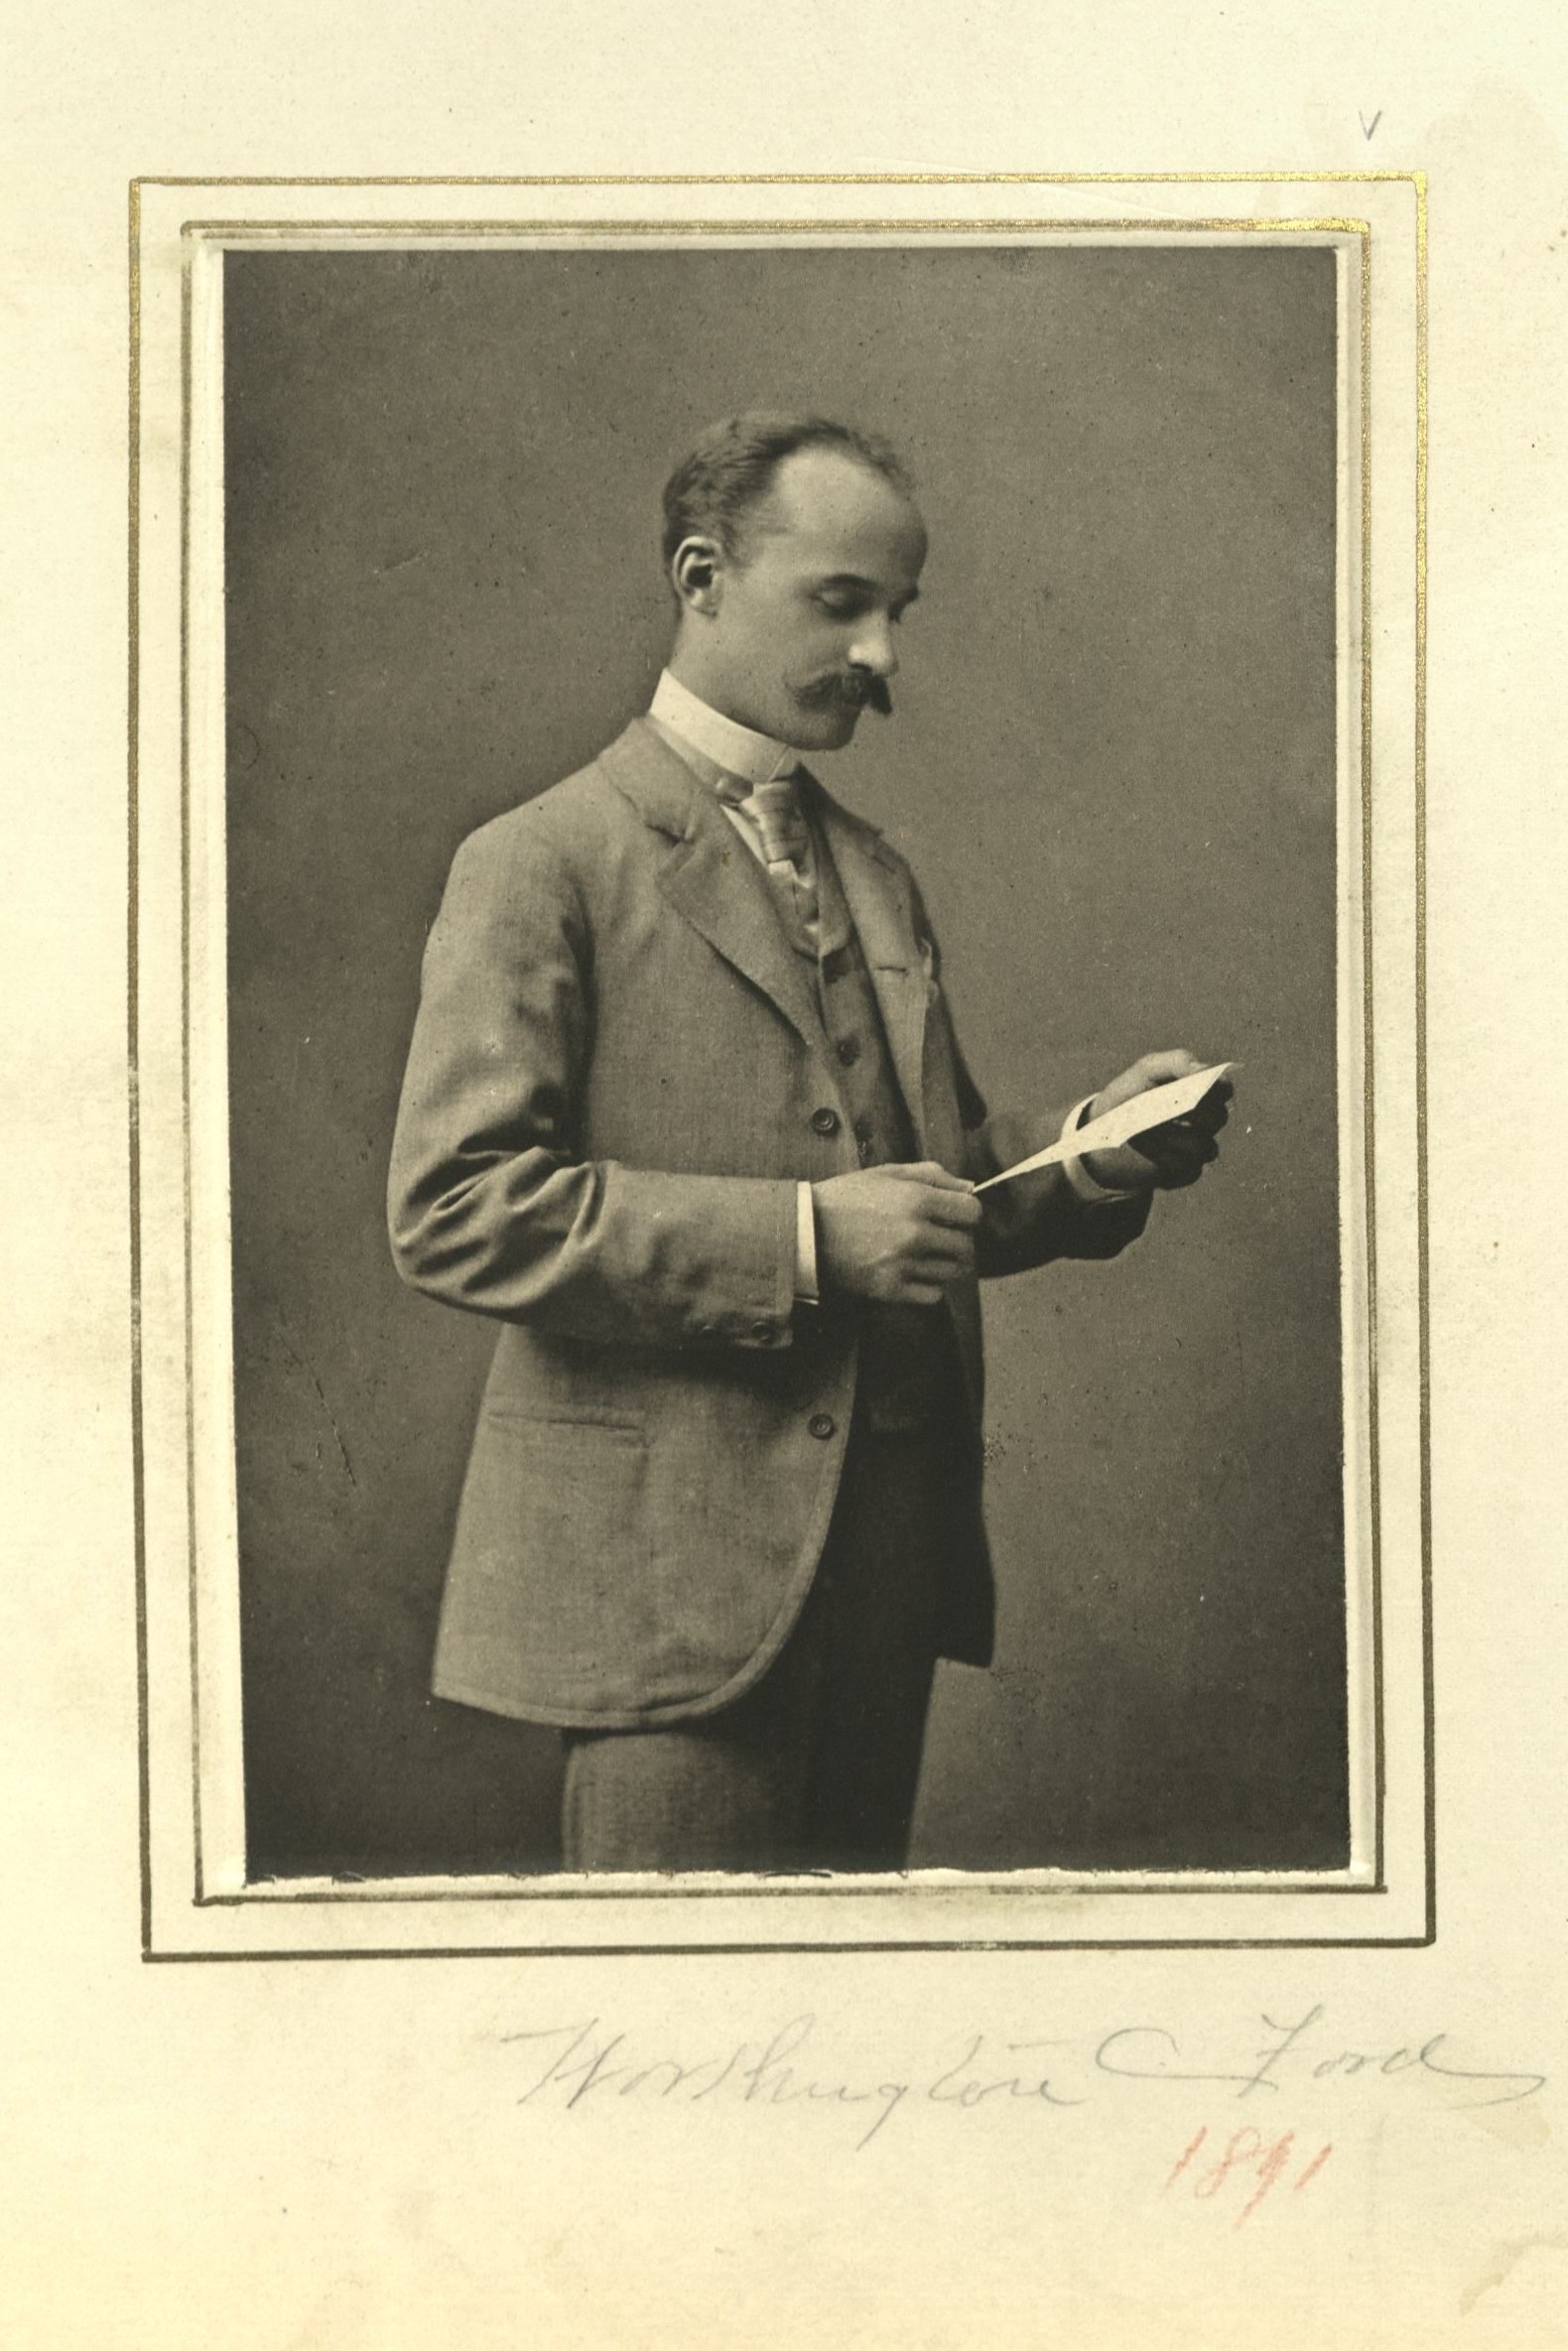 Member portrait of Worthington C. Ford